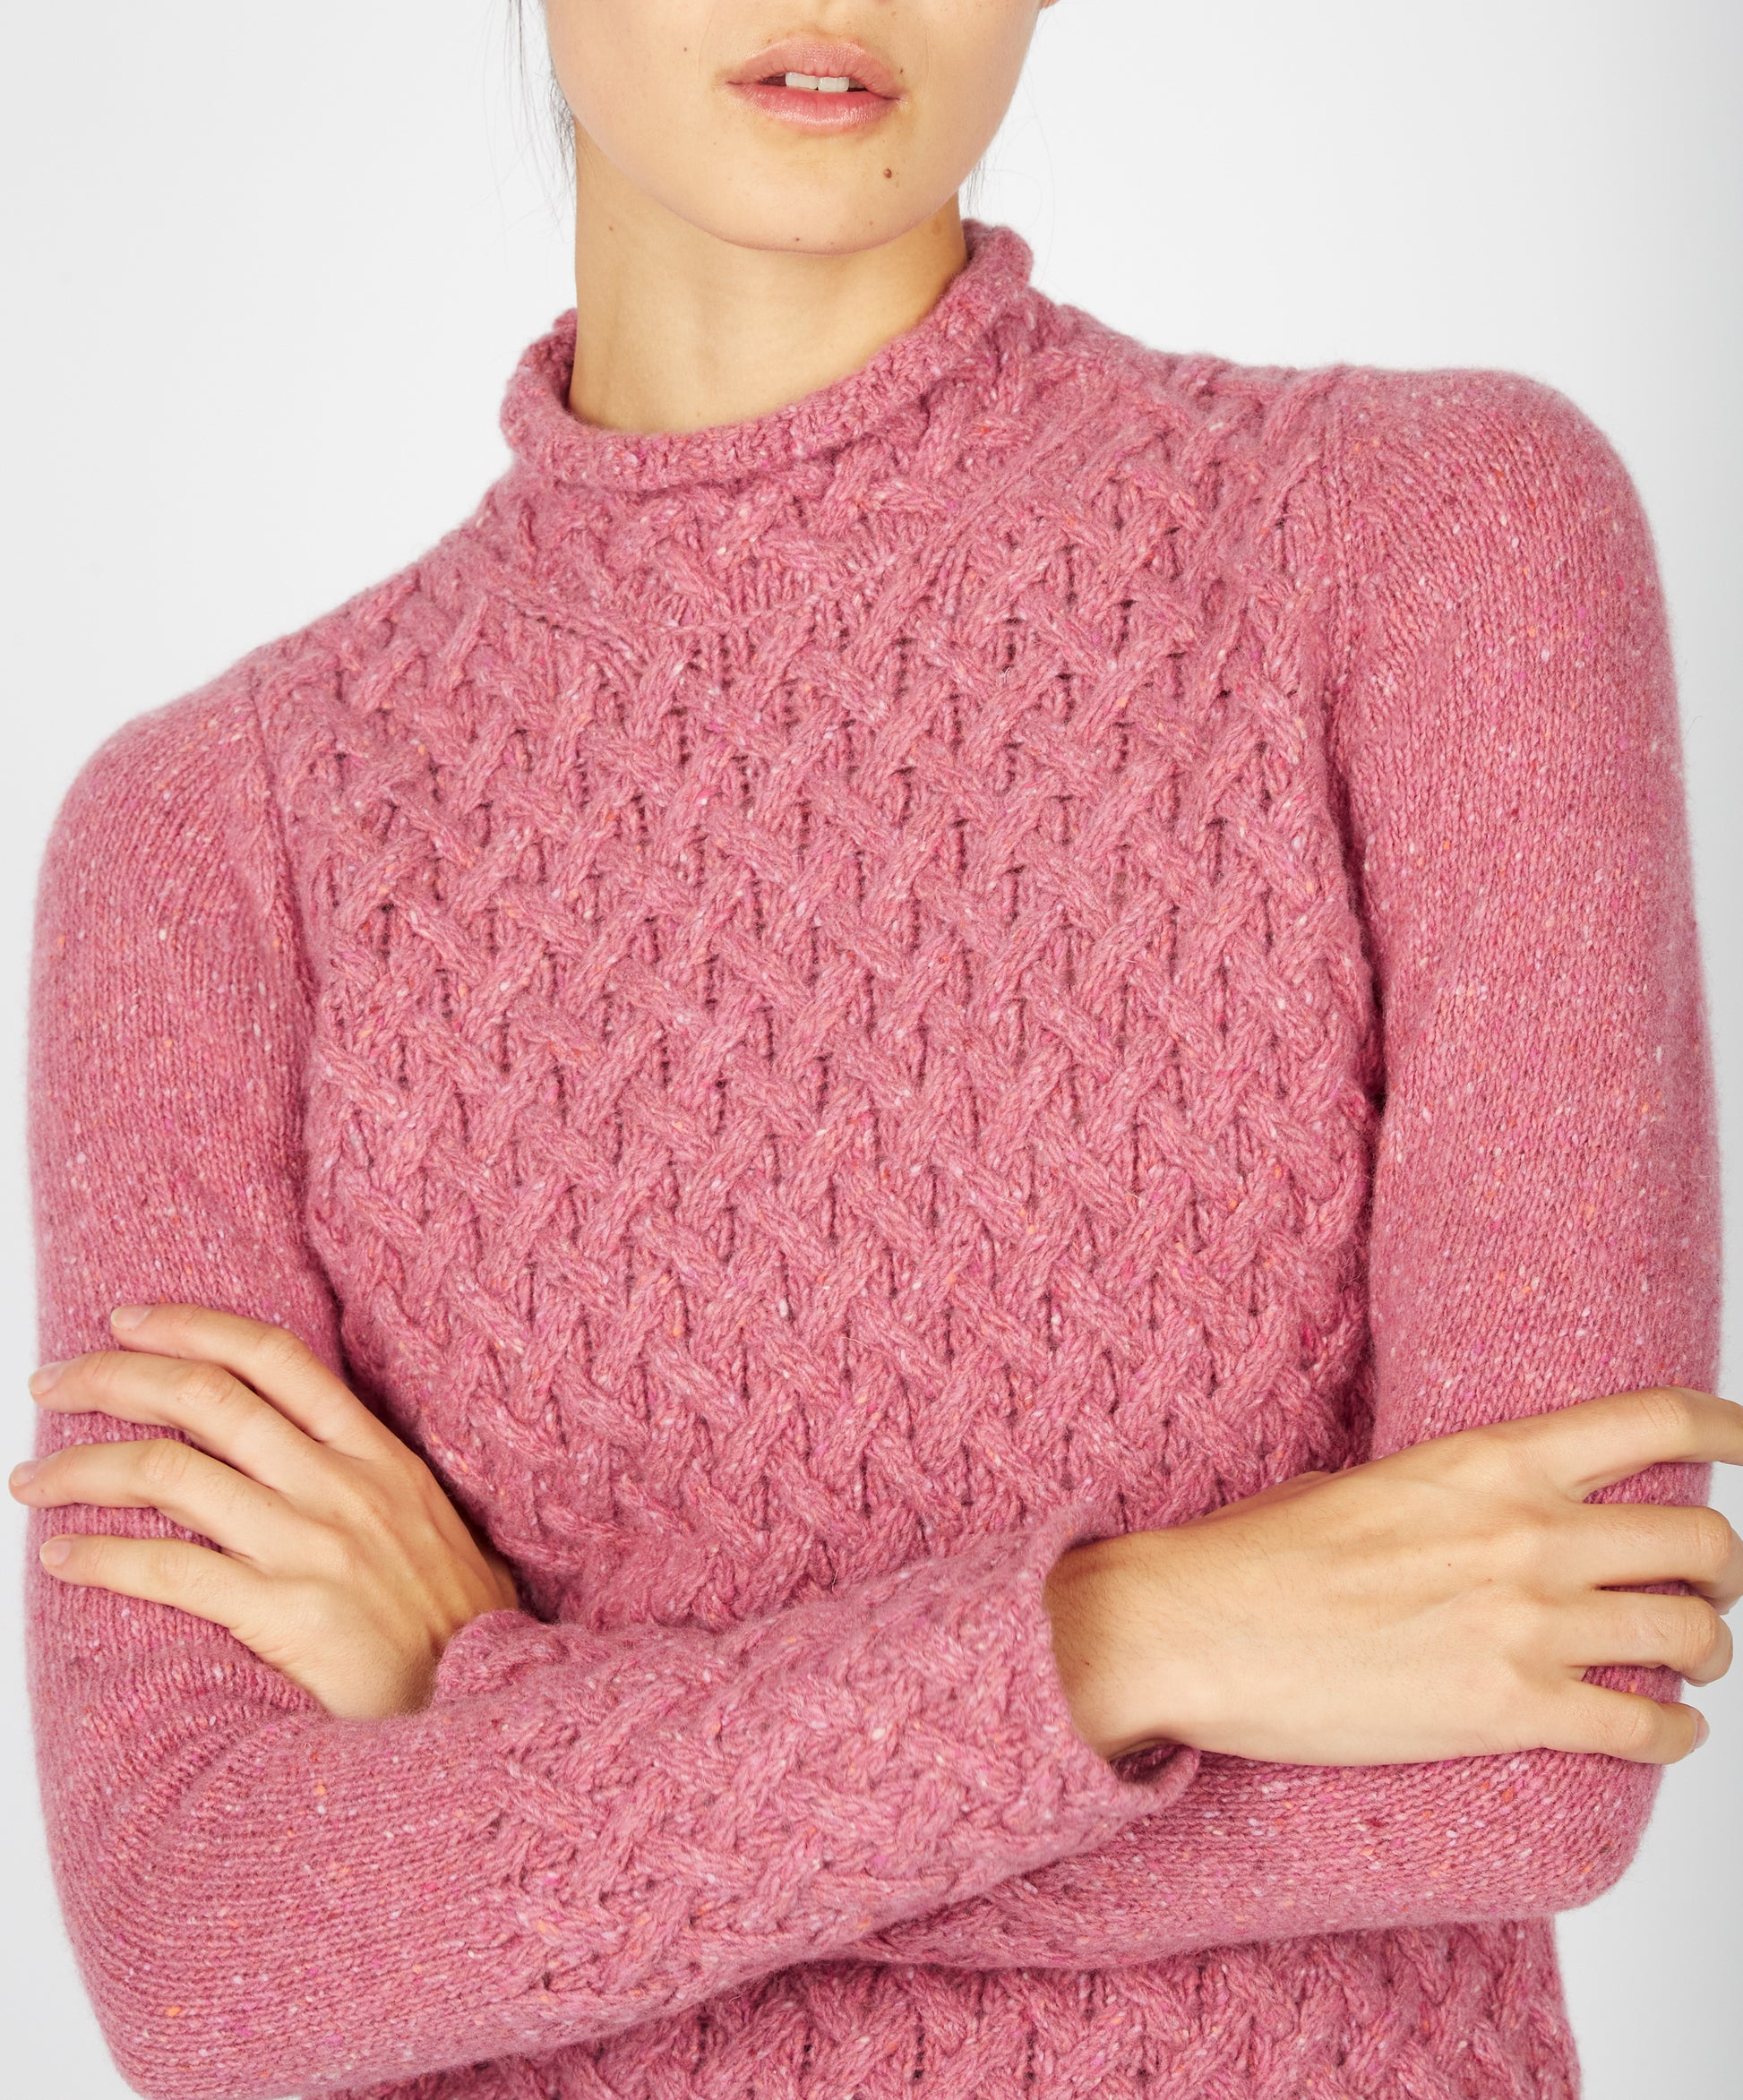  IrelandsEye Knitwear Trellis Sweater Bubblegum Pink